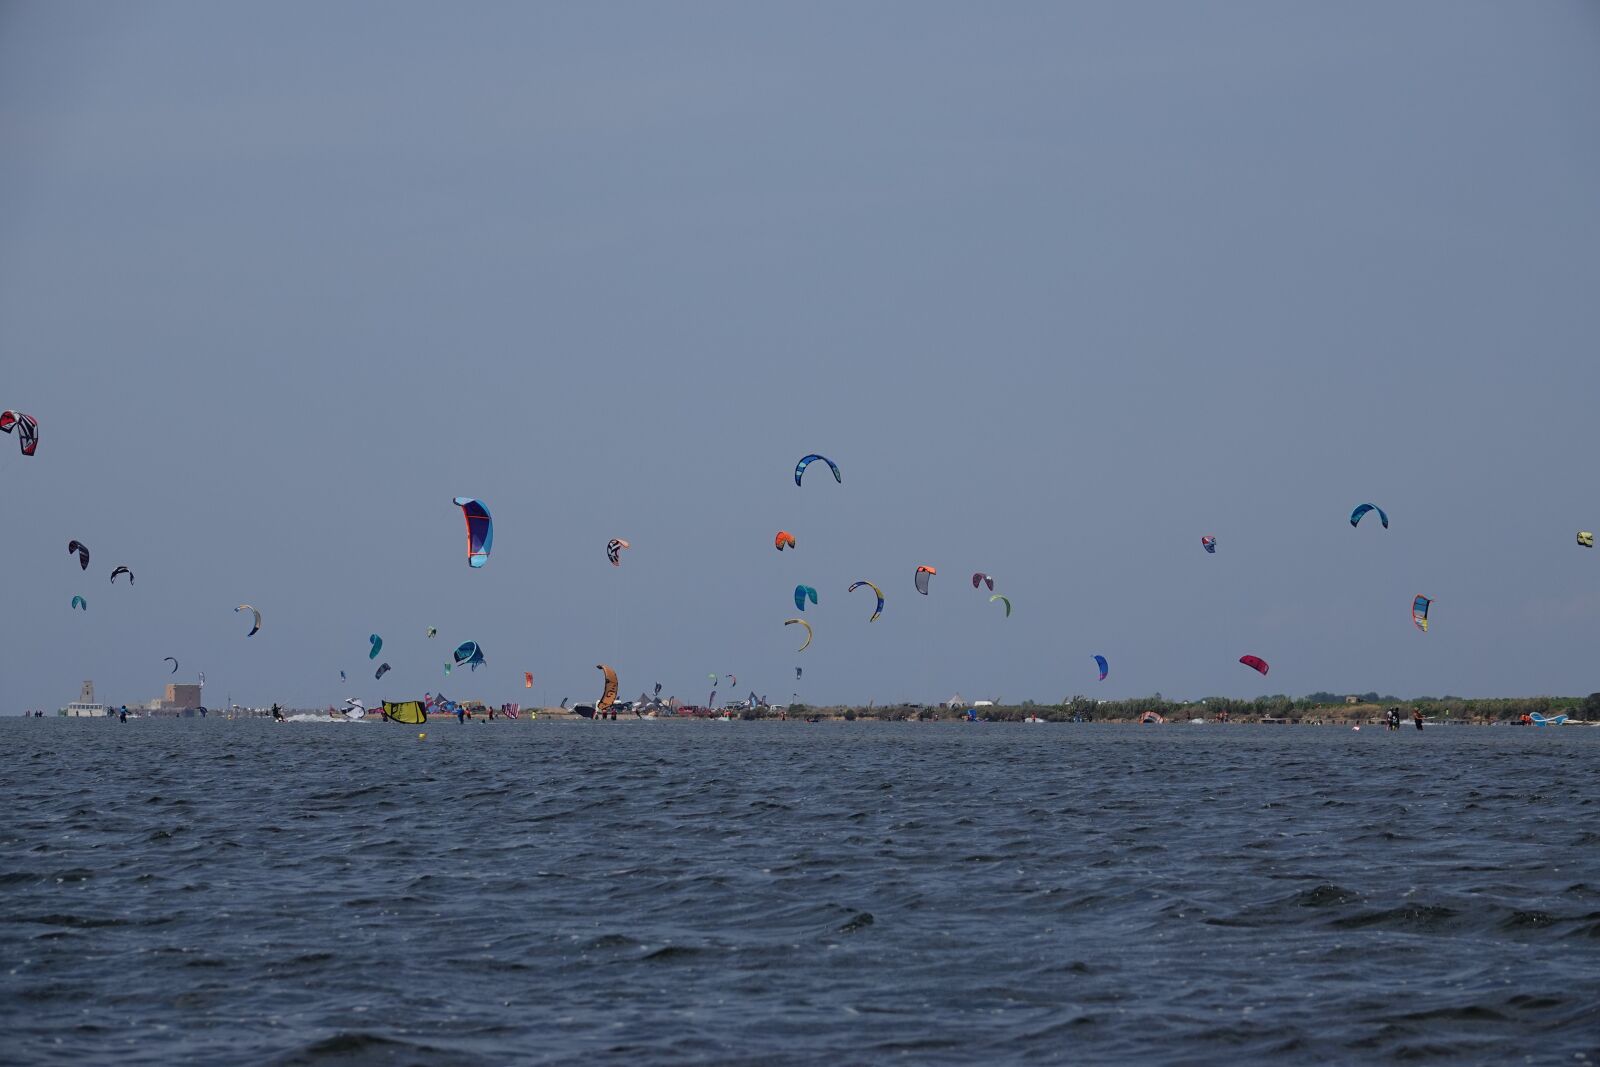 Sony Cyber-shot DSC-RX10 IV sample photo. Kitesurfing, kites, sea photography